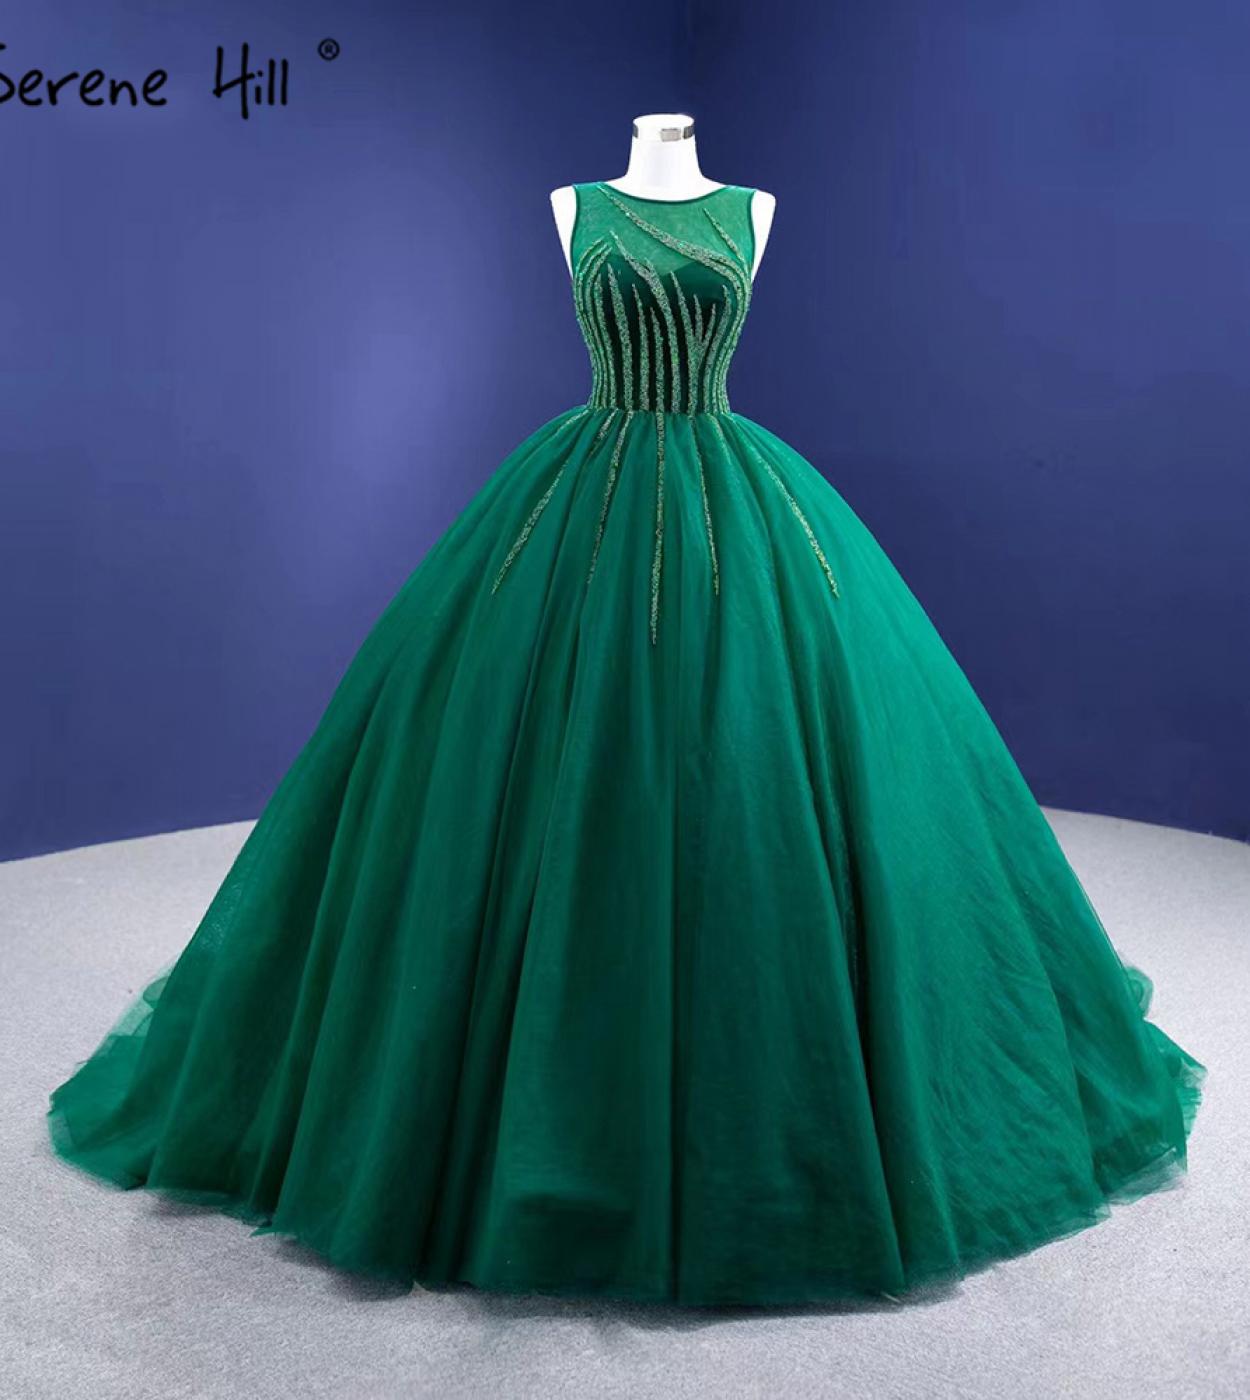 Serene Hill vert Aline haut de gamme robes de soirée robes sans manches perlées pour les femmes fête Hm67237 robes de soirée